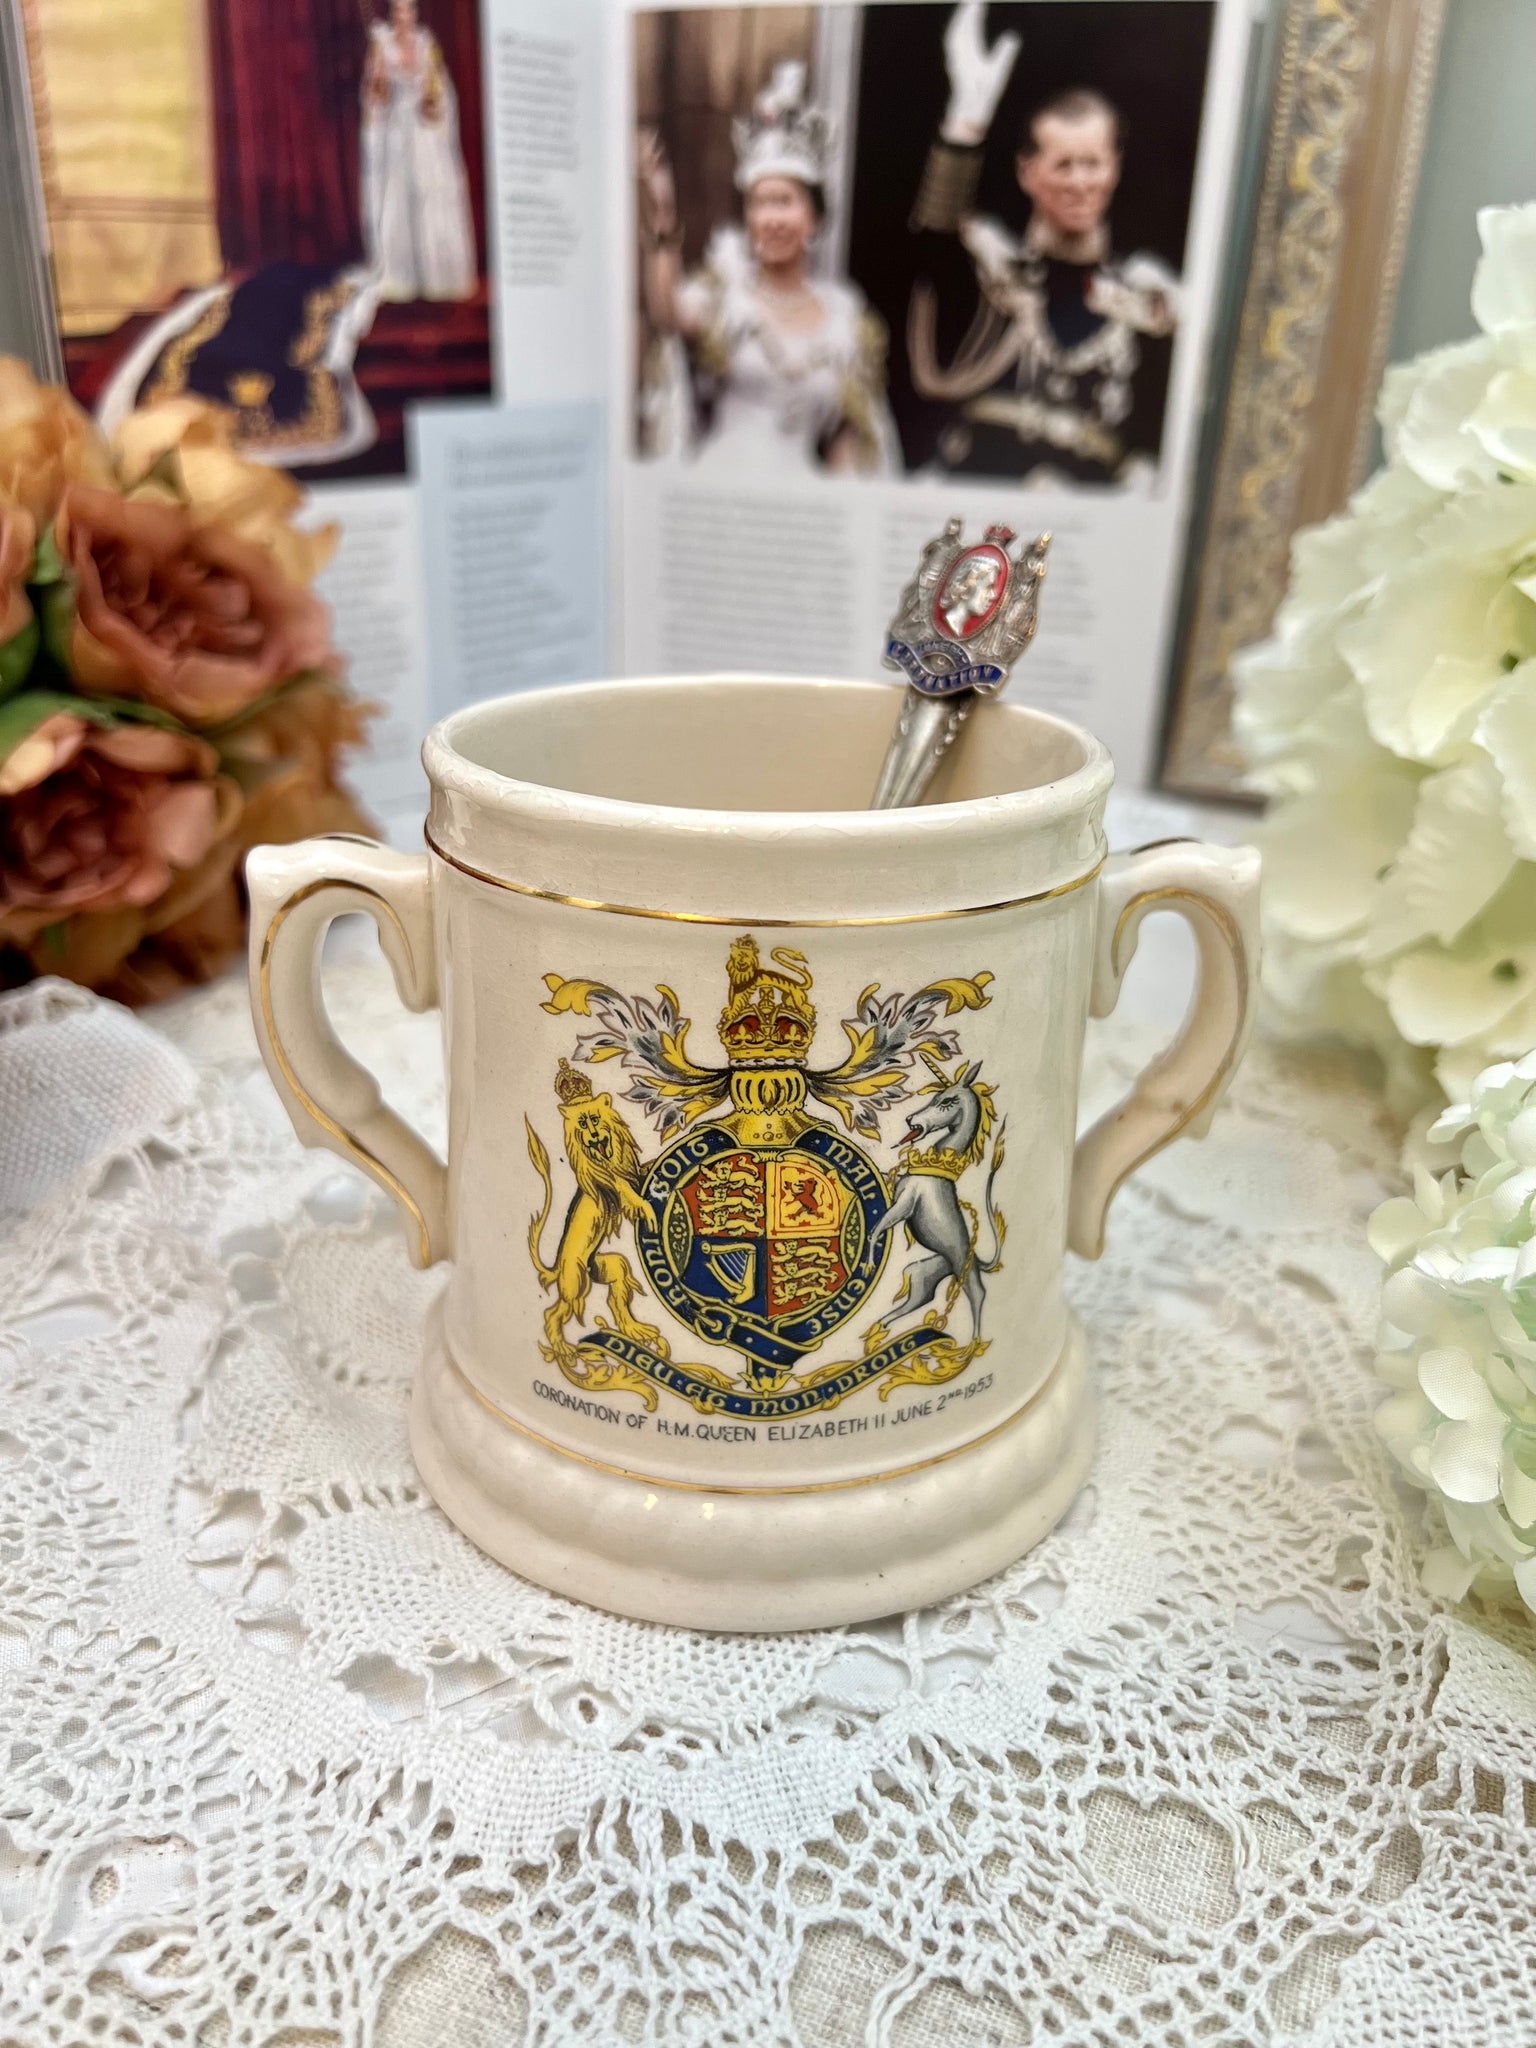 エリザベス女王 1953年 コロネーション (戴冠式) 記念カップ – caronrose